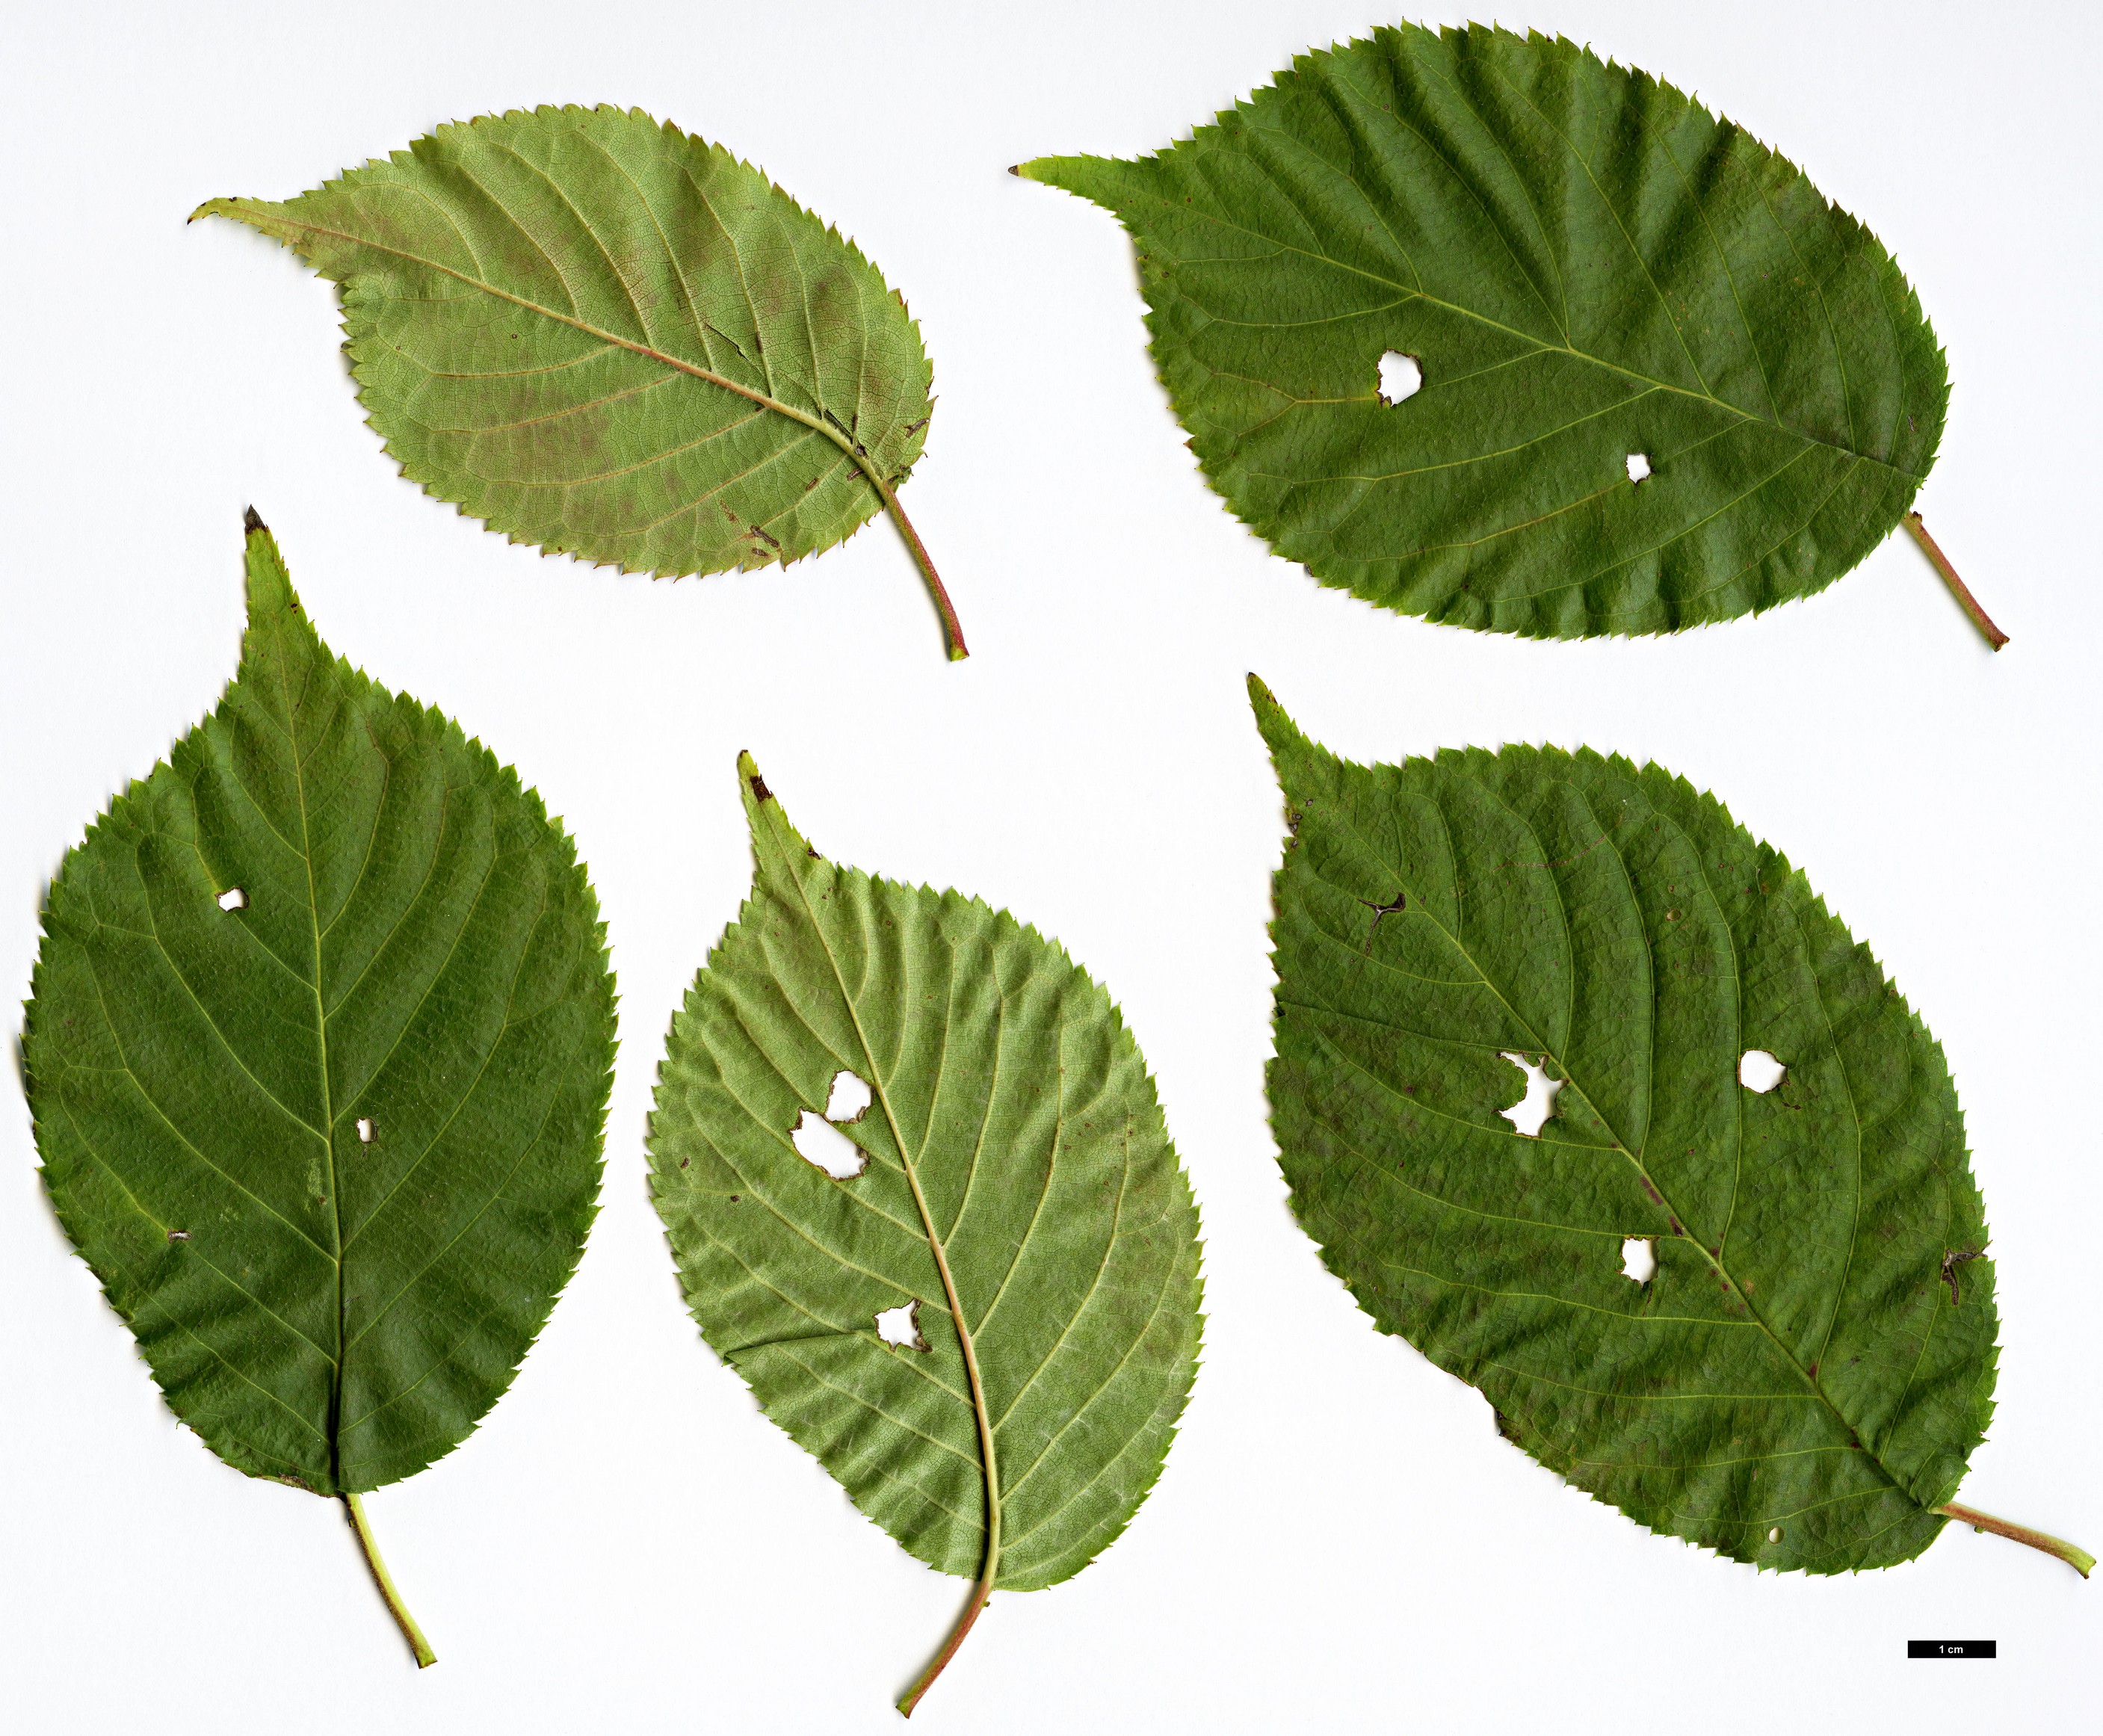 High resolution image: Family: Rosaceae - Genus: Prunus - Taxon: verecunda - SpeciesSub: ’Autumn Glory’